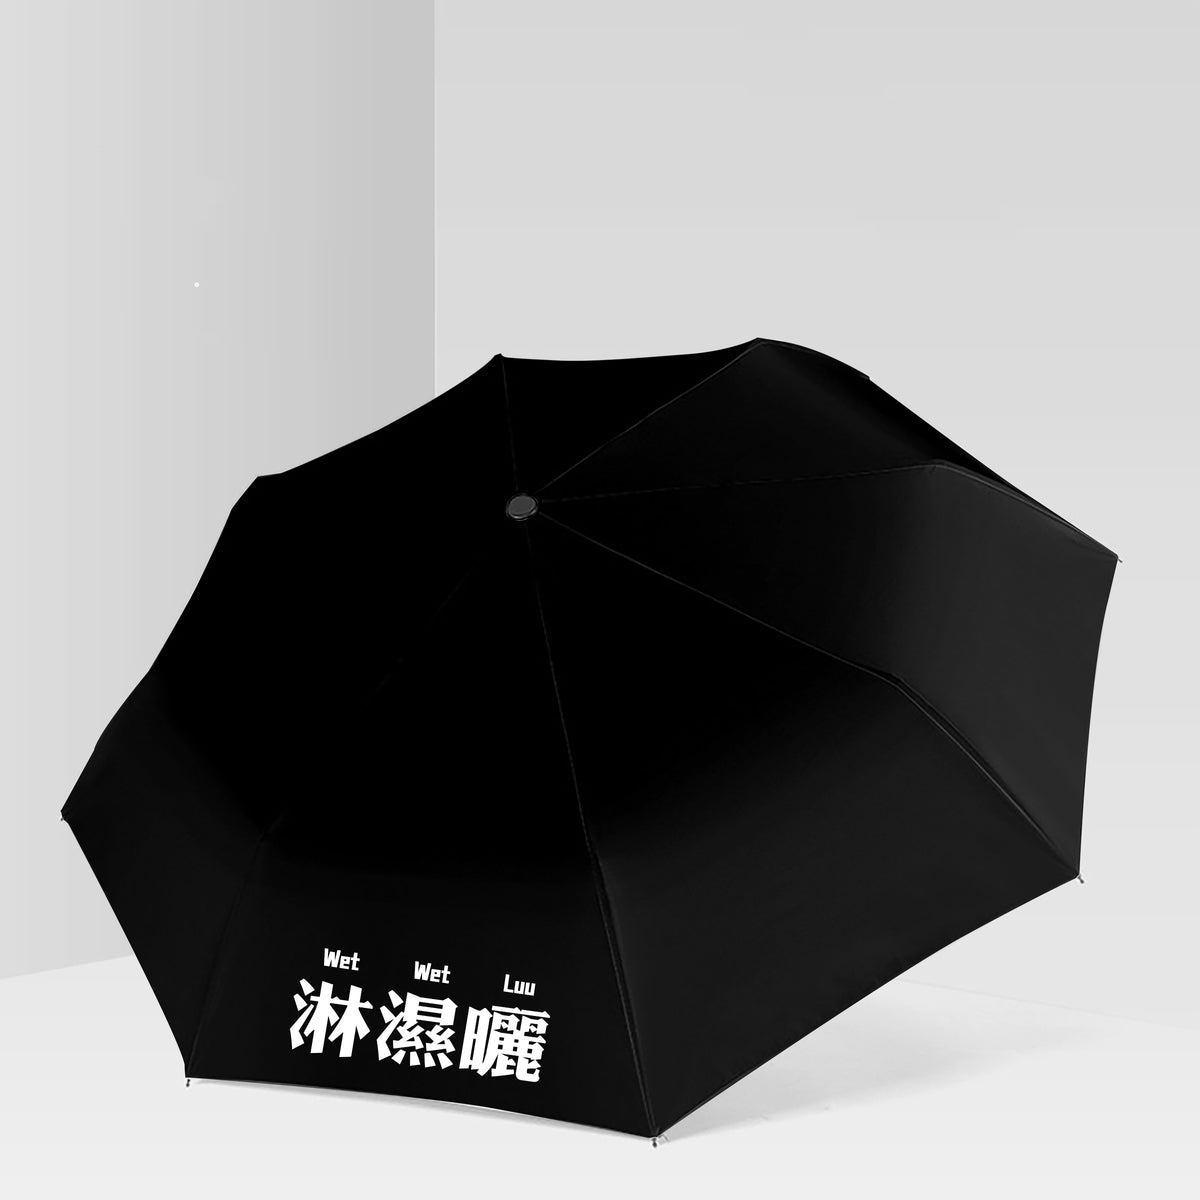 【我們都愛廣東話】淋濕曬雨傘 廣東話晴雨傘  雨傘禮物定制商務 禮品